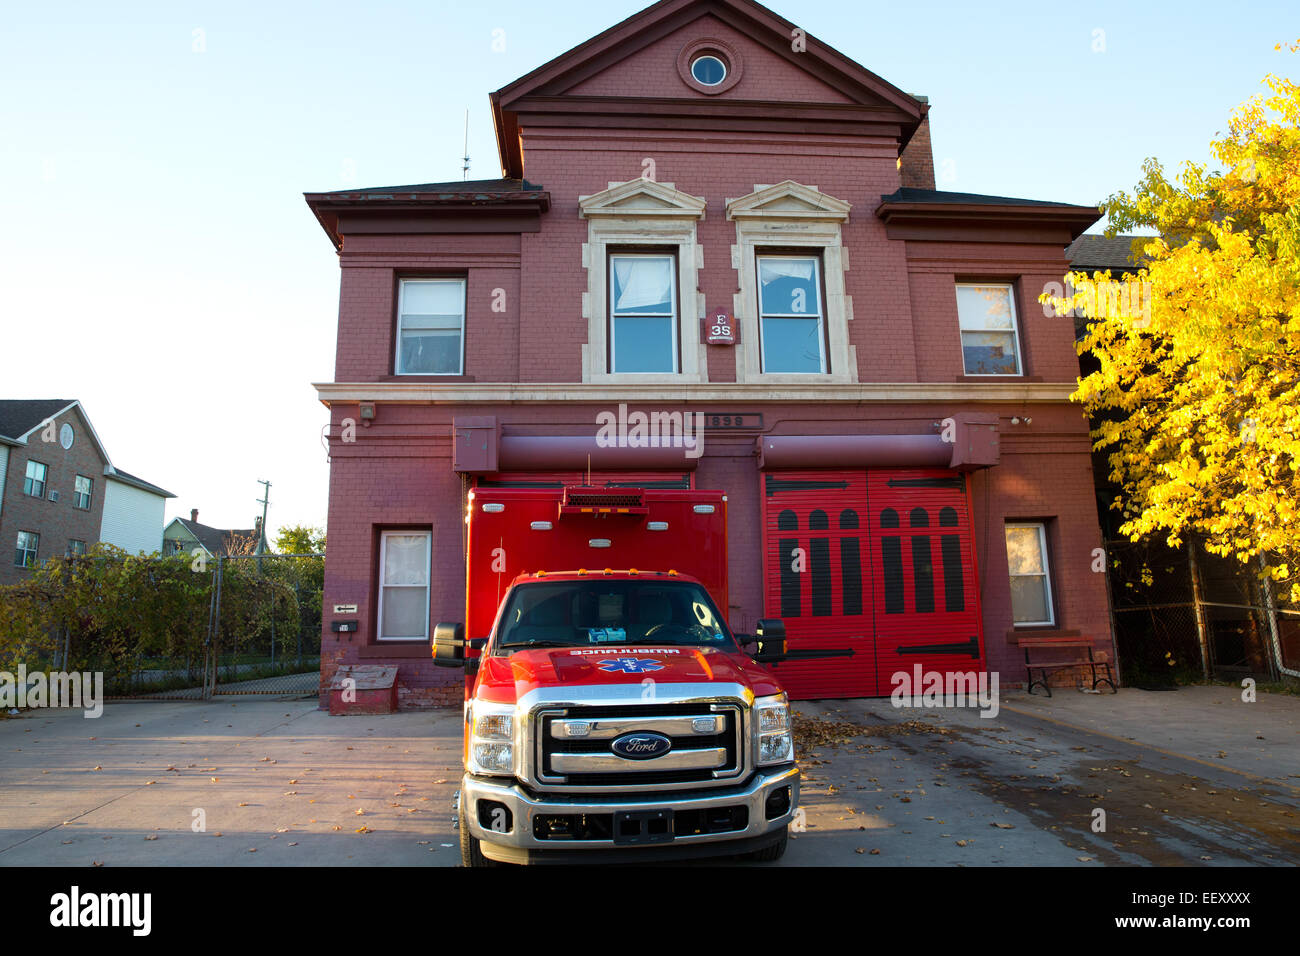 Ambulanza di Detroit il reparto antincendio, Michigan, Stati Uniti d'America, 25 ottobre 2014. Foto Stock